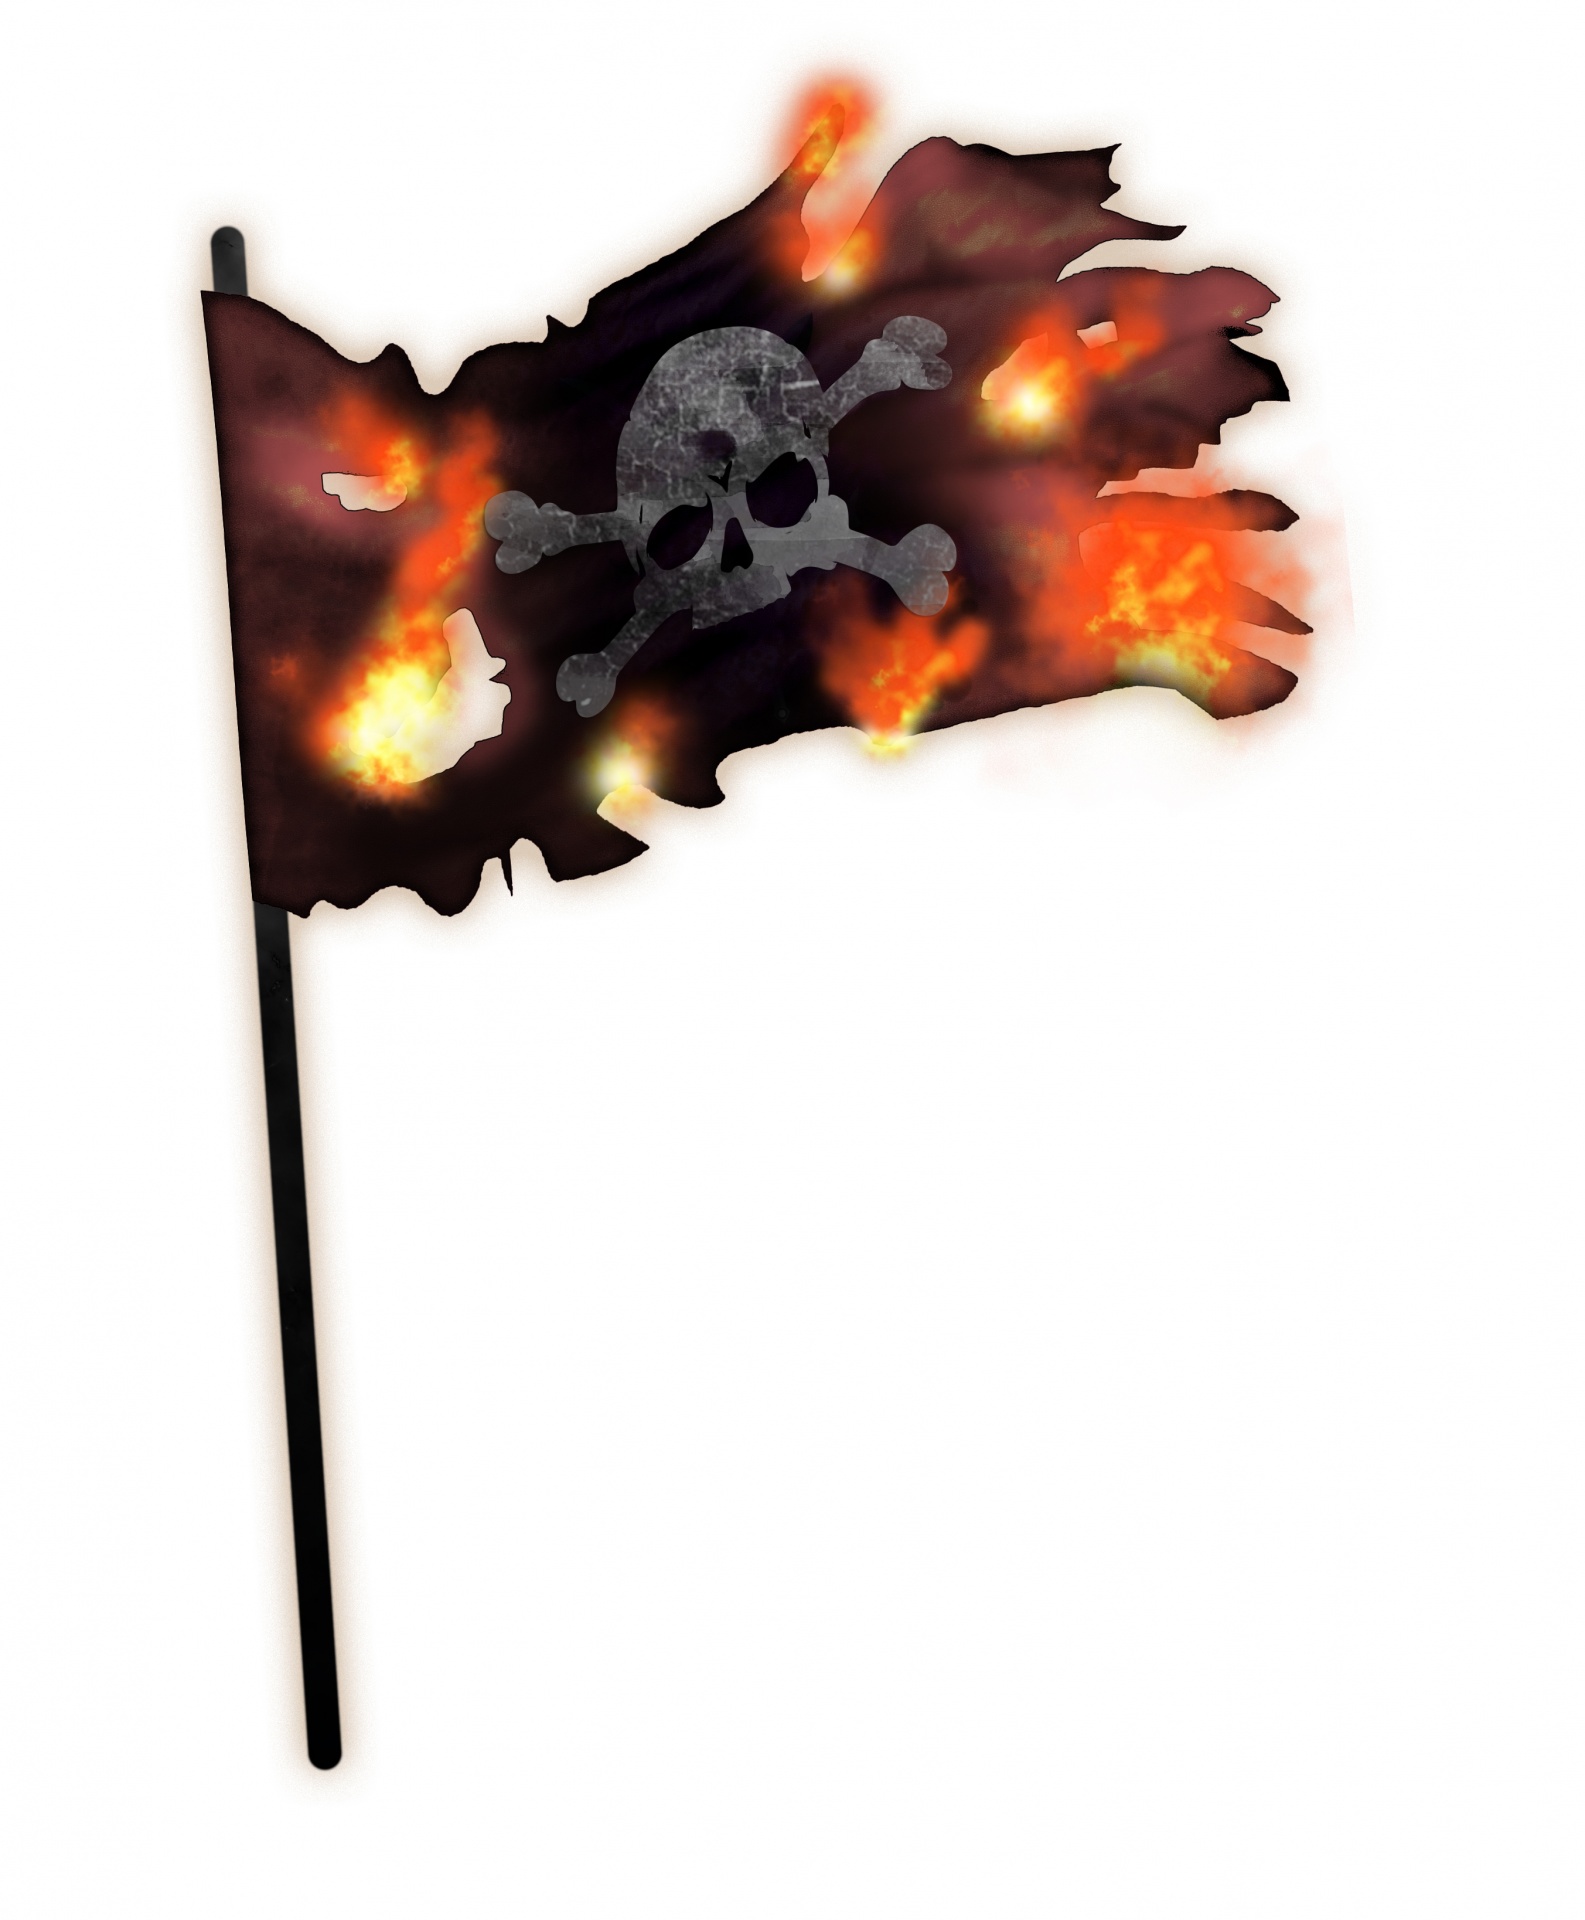 Pirate, Pirate skull flag, skull flag, black pirate flag, waving flag, black waving flag, ruined flag